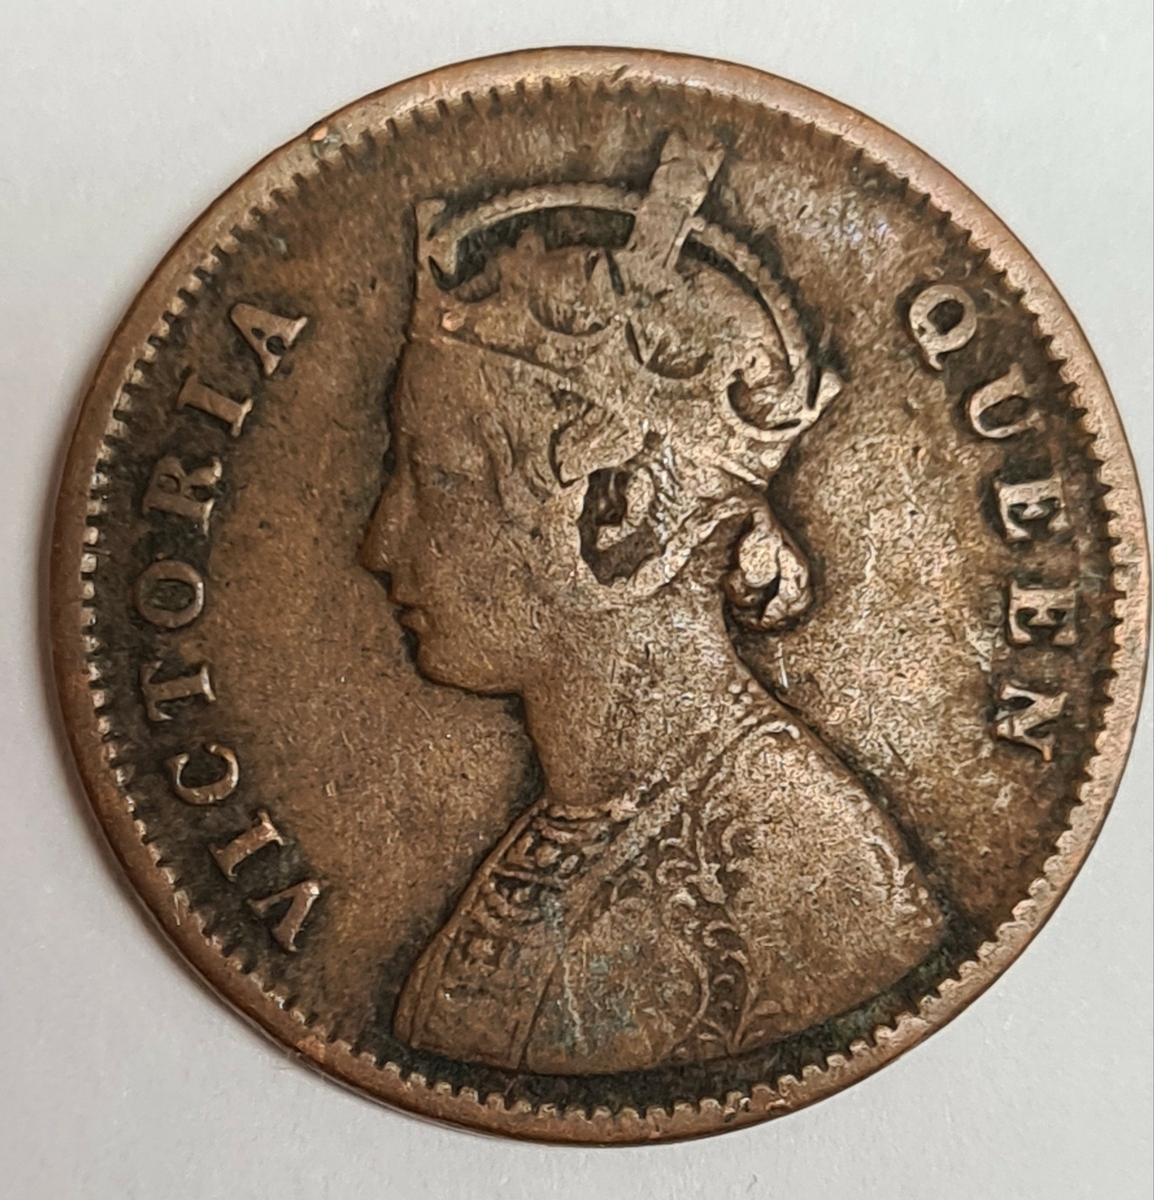 Två mynt från Indien/Storbritanien.
1/4 Anna, 1862
1/4 Anna, 1862